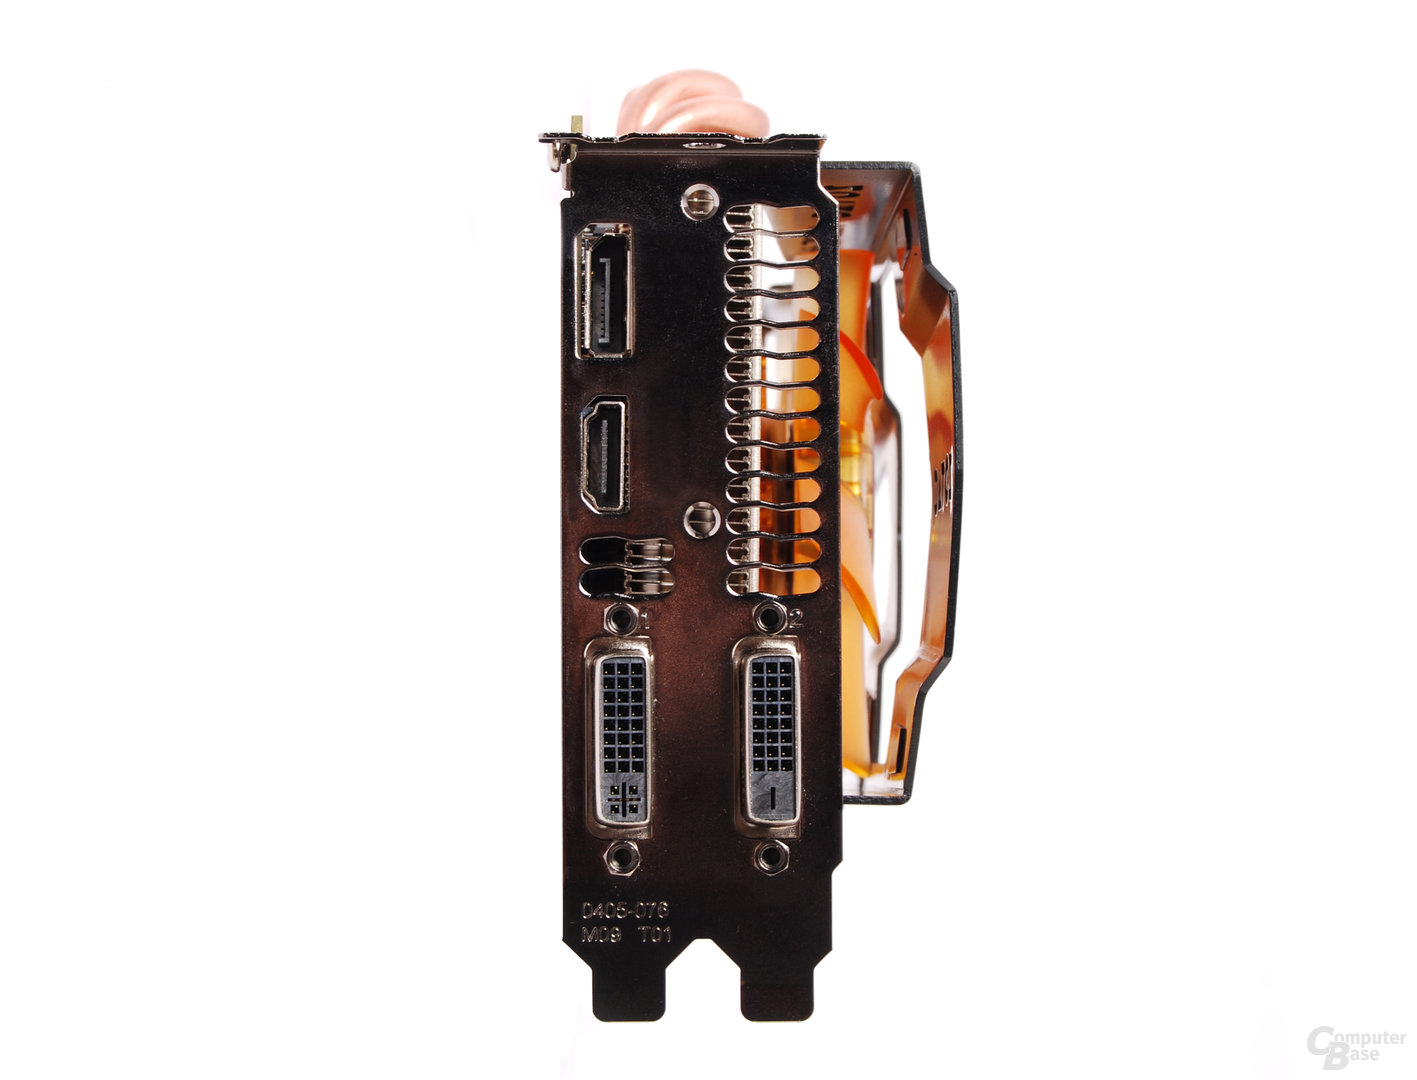 Zotac GeForce GTX 670